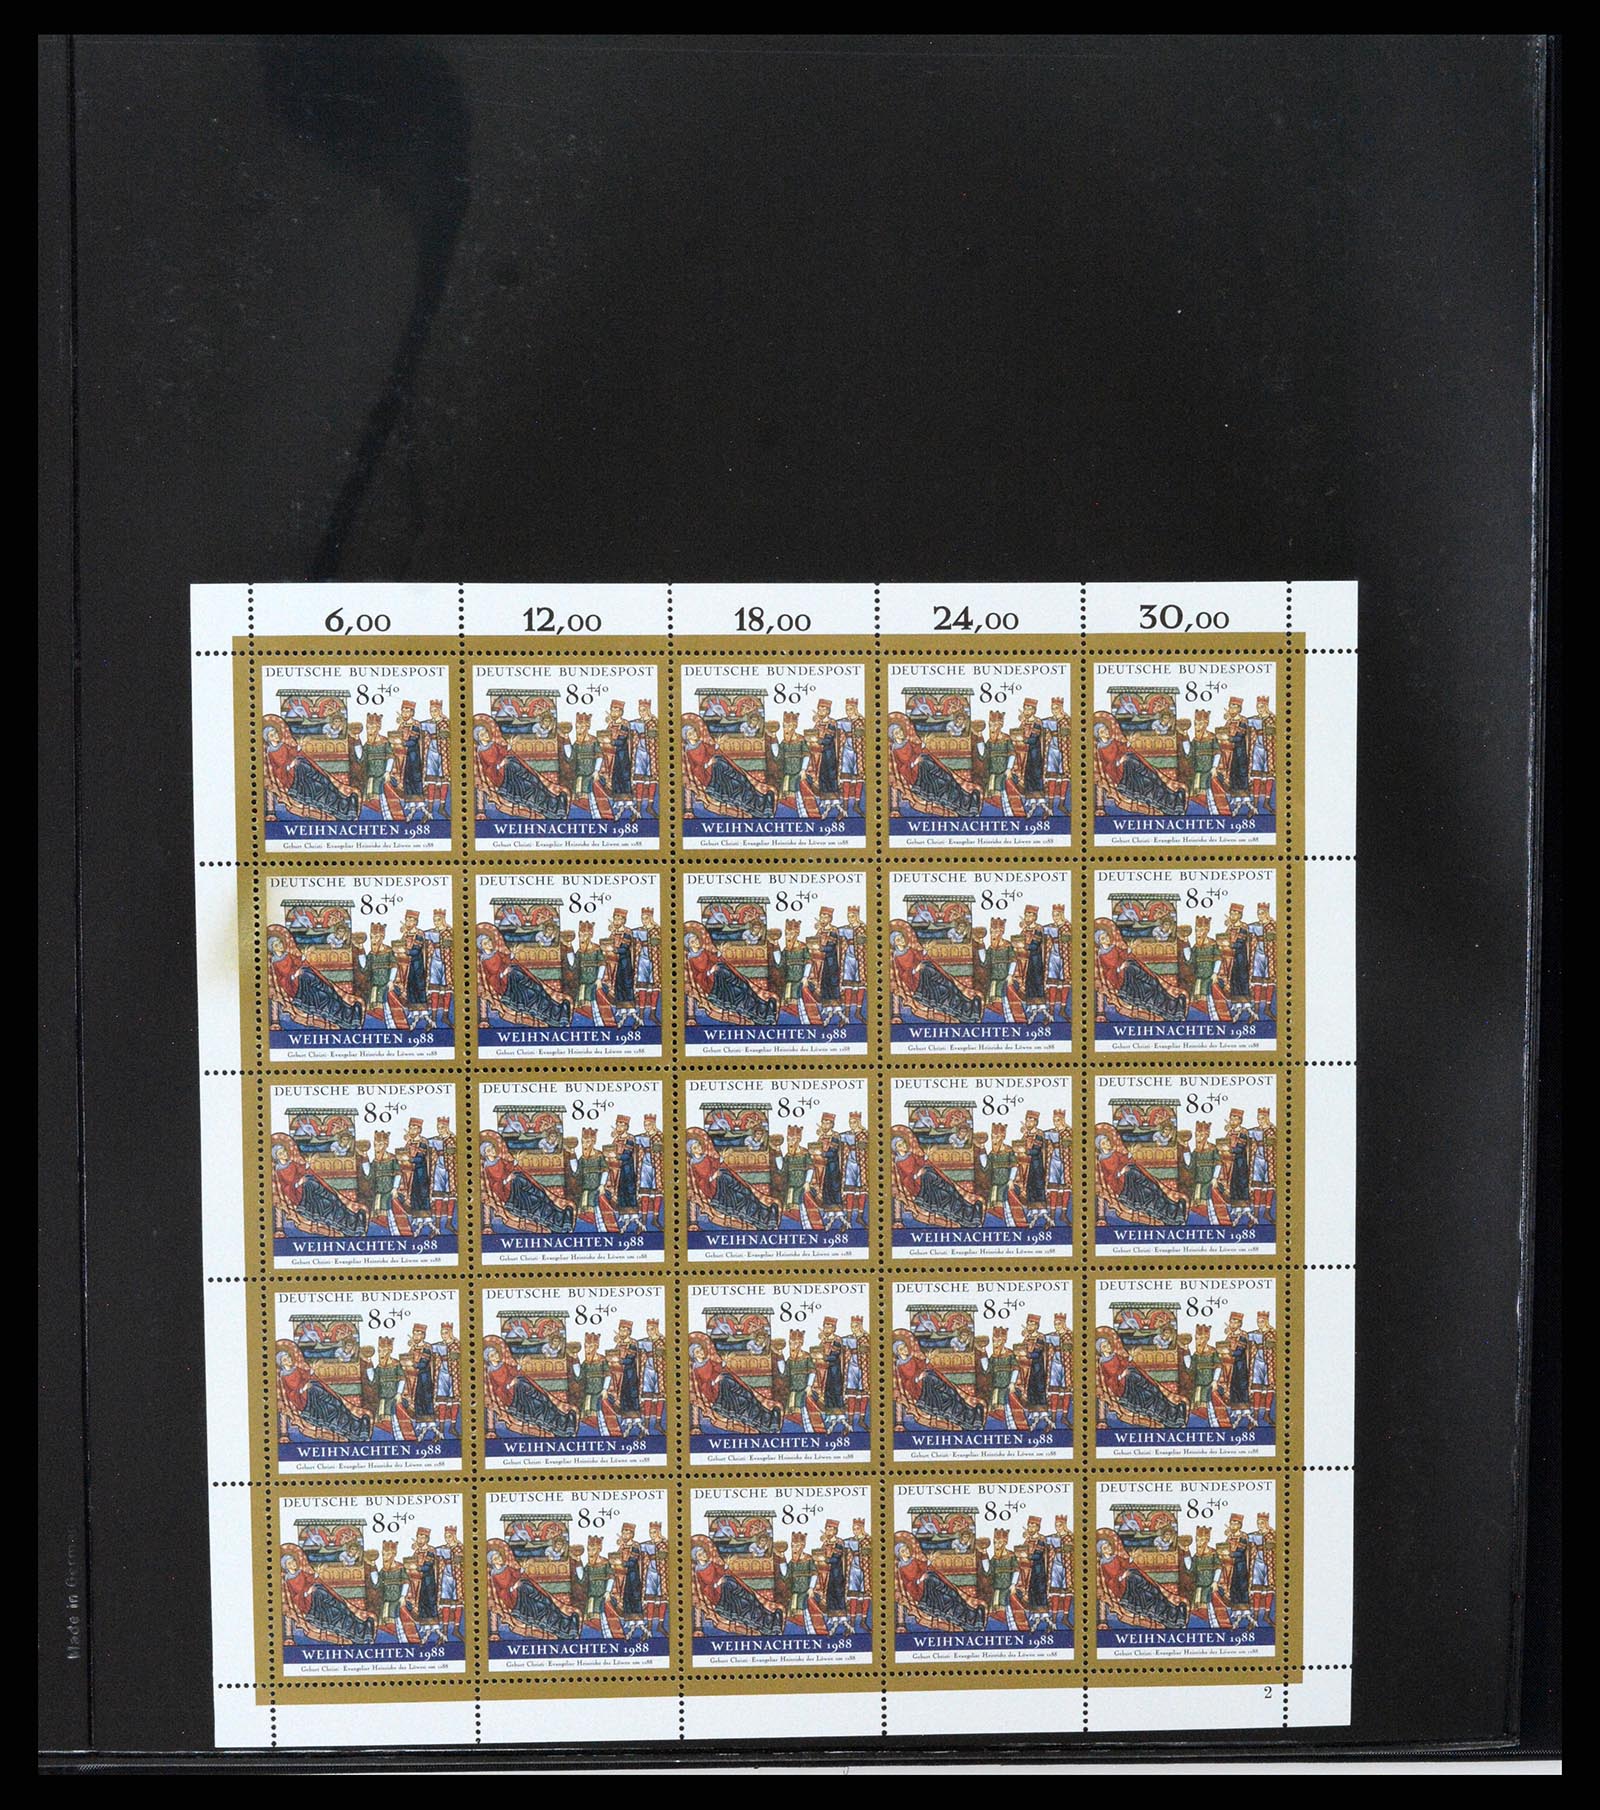 37345 043 - Stamp collection 37345 European countries souvenir sheets.